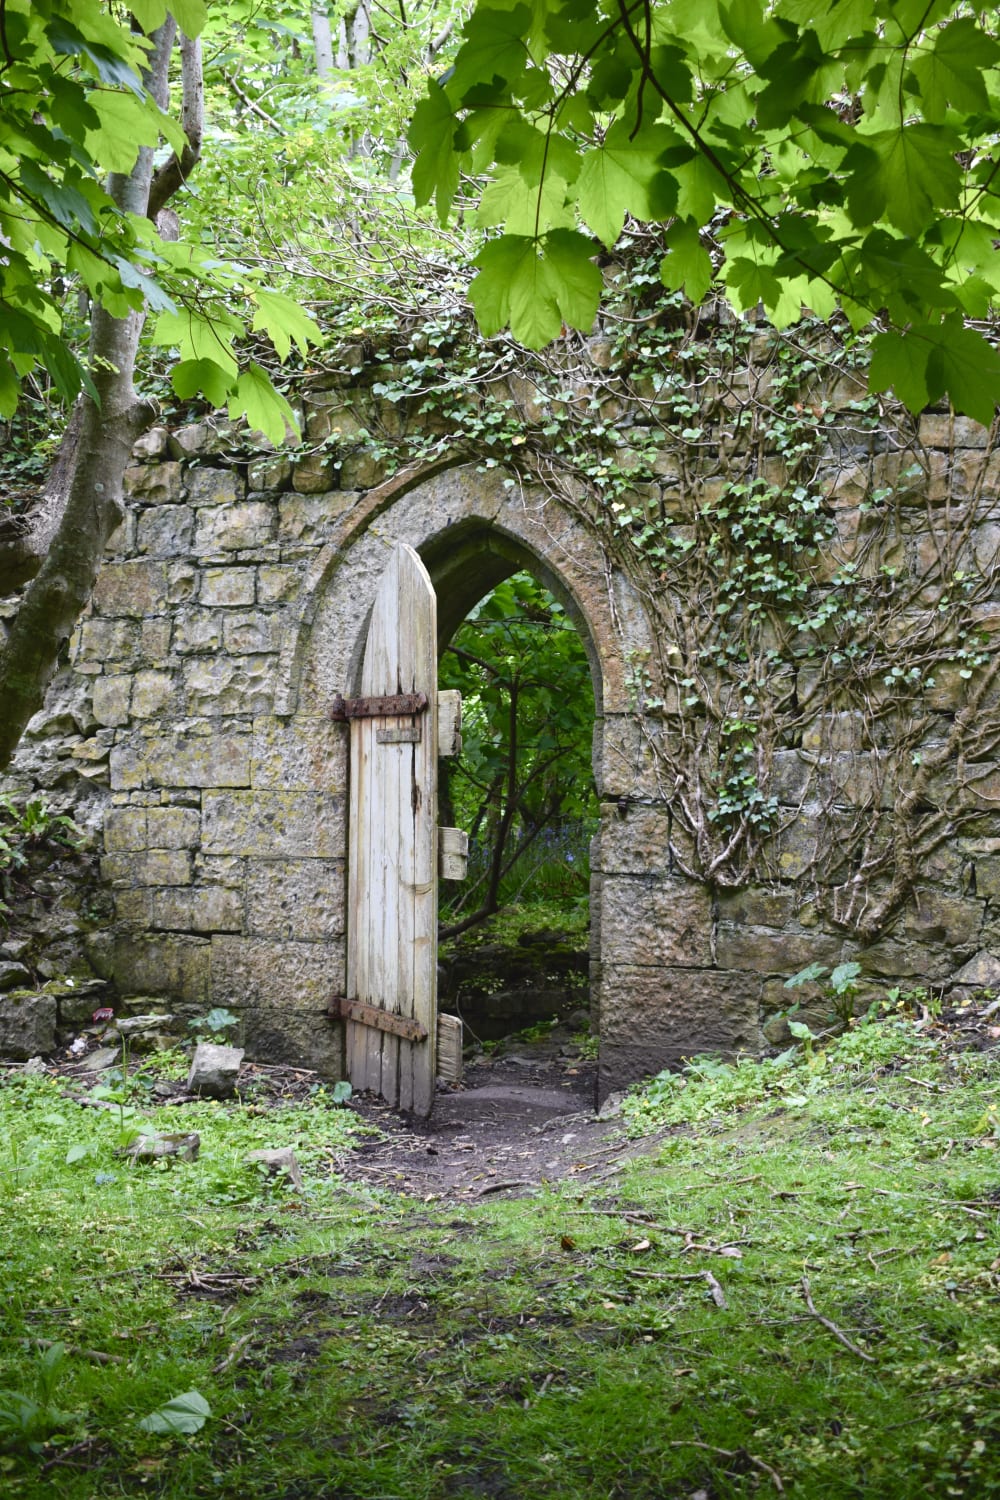 ITAP of a castle door in Wales